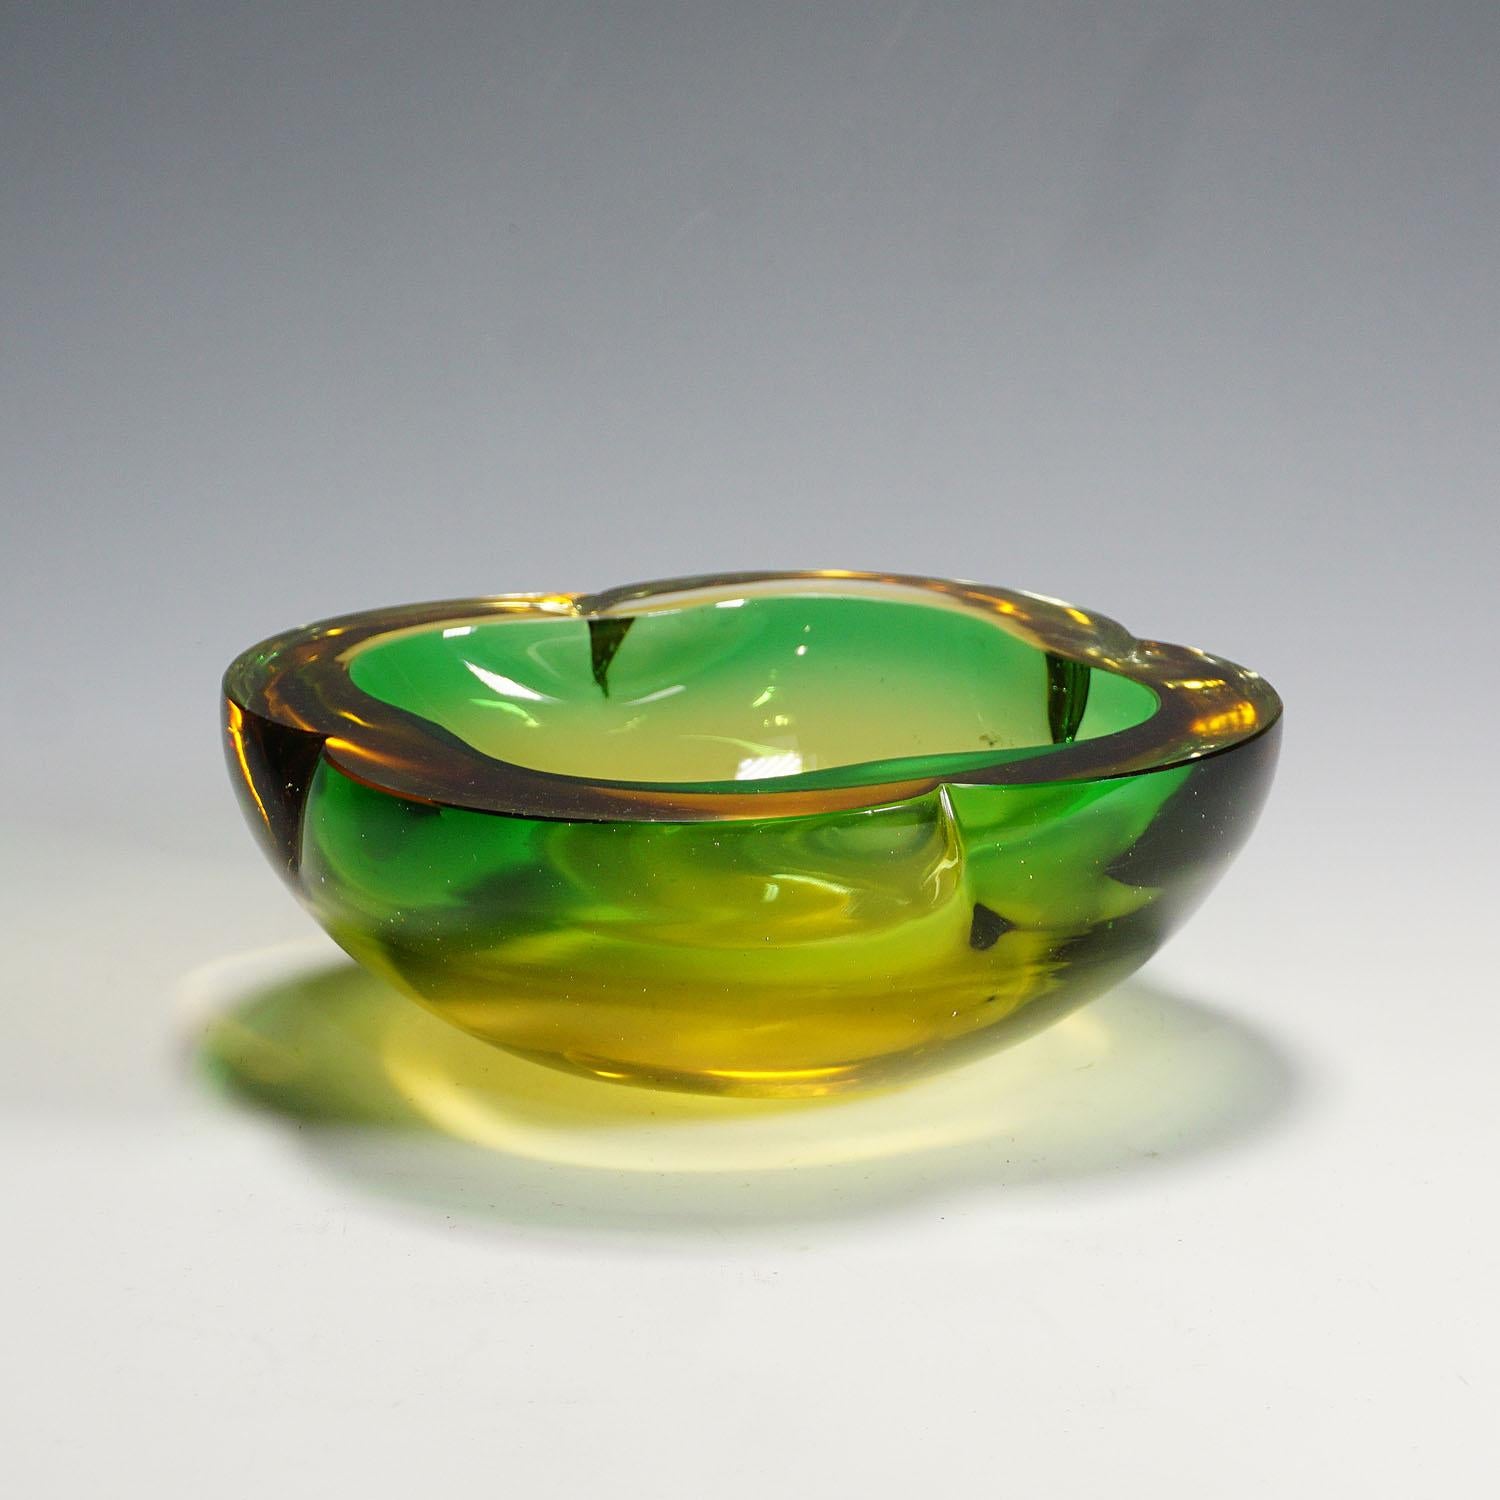 Eine schwere Murano-Sommerso-Glasschale, die wahrscheinlich von Seguso Vetri d'Arte um 1950 hergestellt wurde. Hergestellt aus grünem Glas mit einem dicken Überfang aus Braunglas. Ein klassisches Design aus den 60er Jahren, das jeden Tisch oder